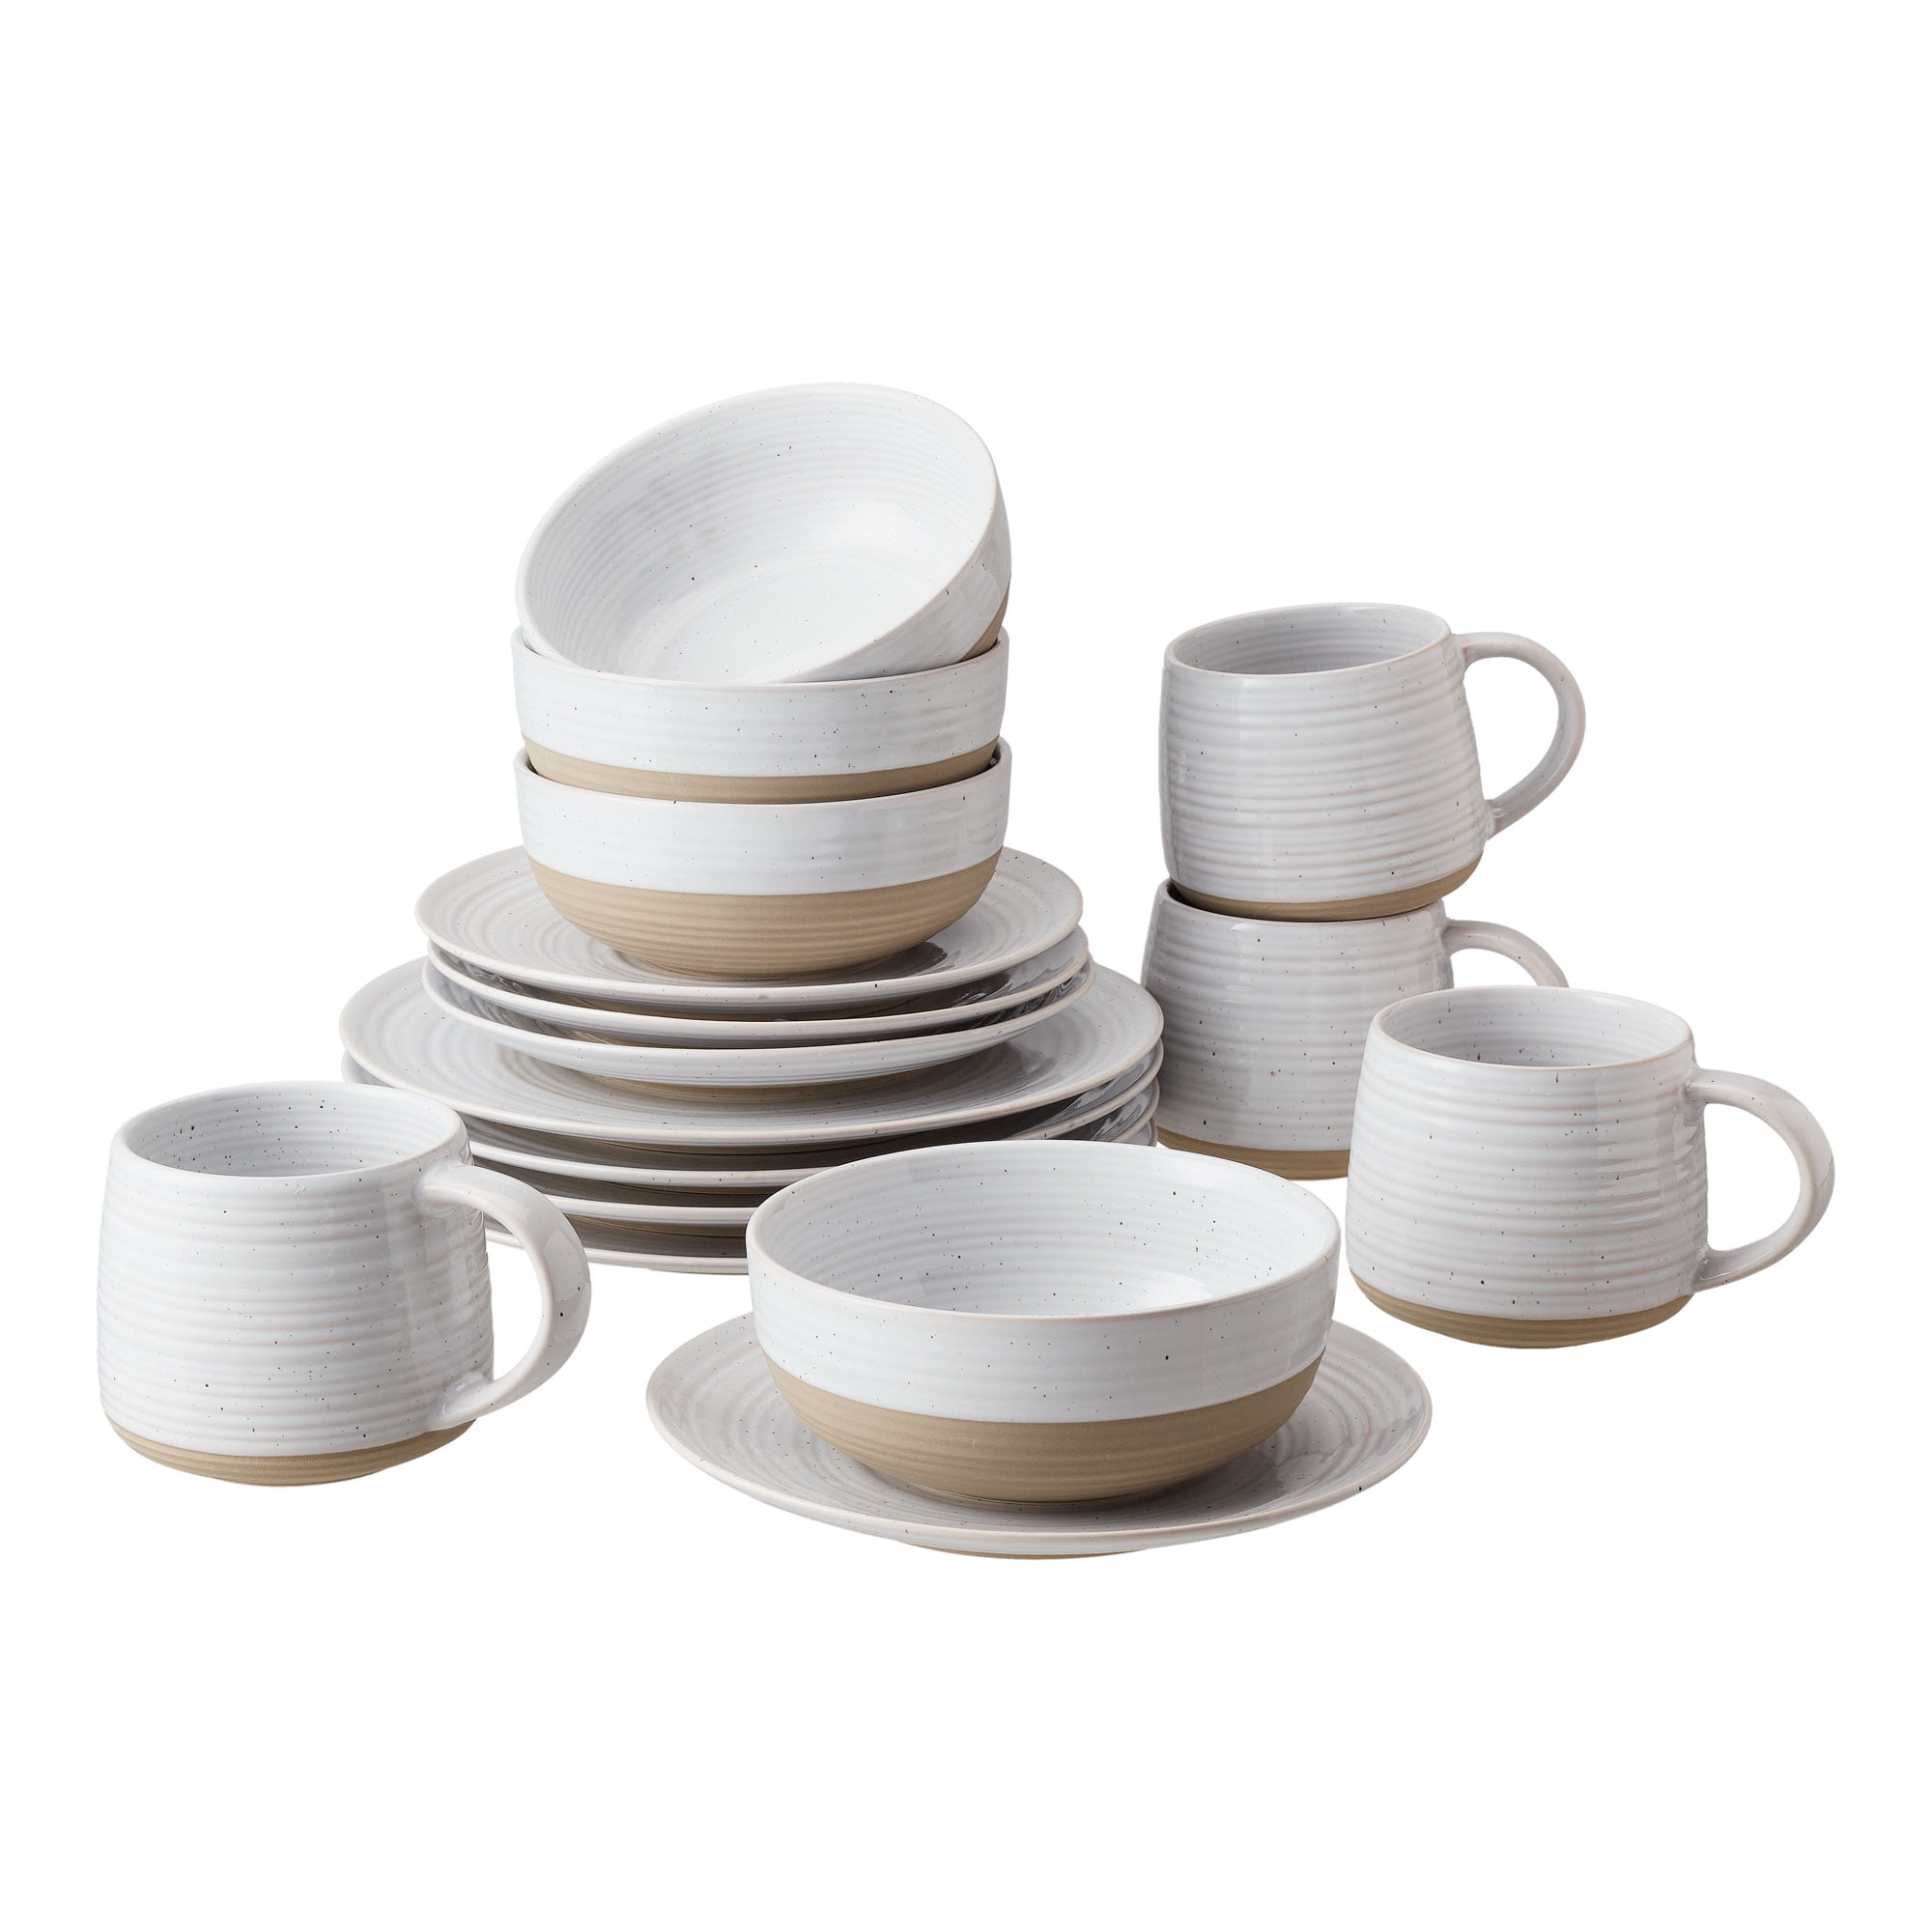 Better Homes & Gardens- Abott White Round Stoneware 16-Piece Dinnerware Set - Walmart.com